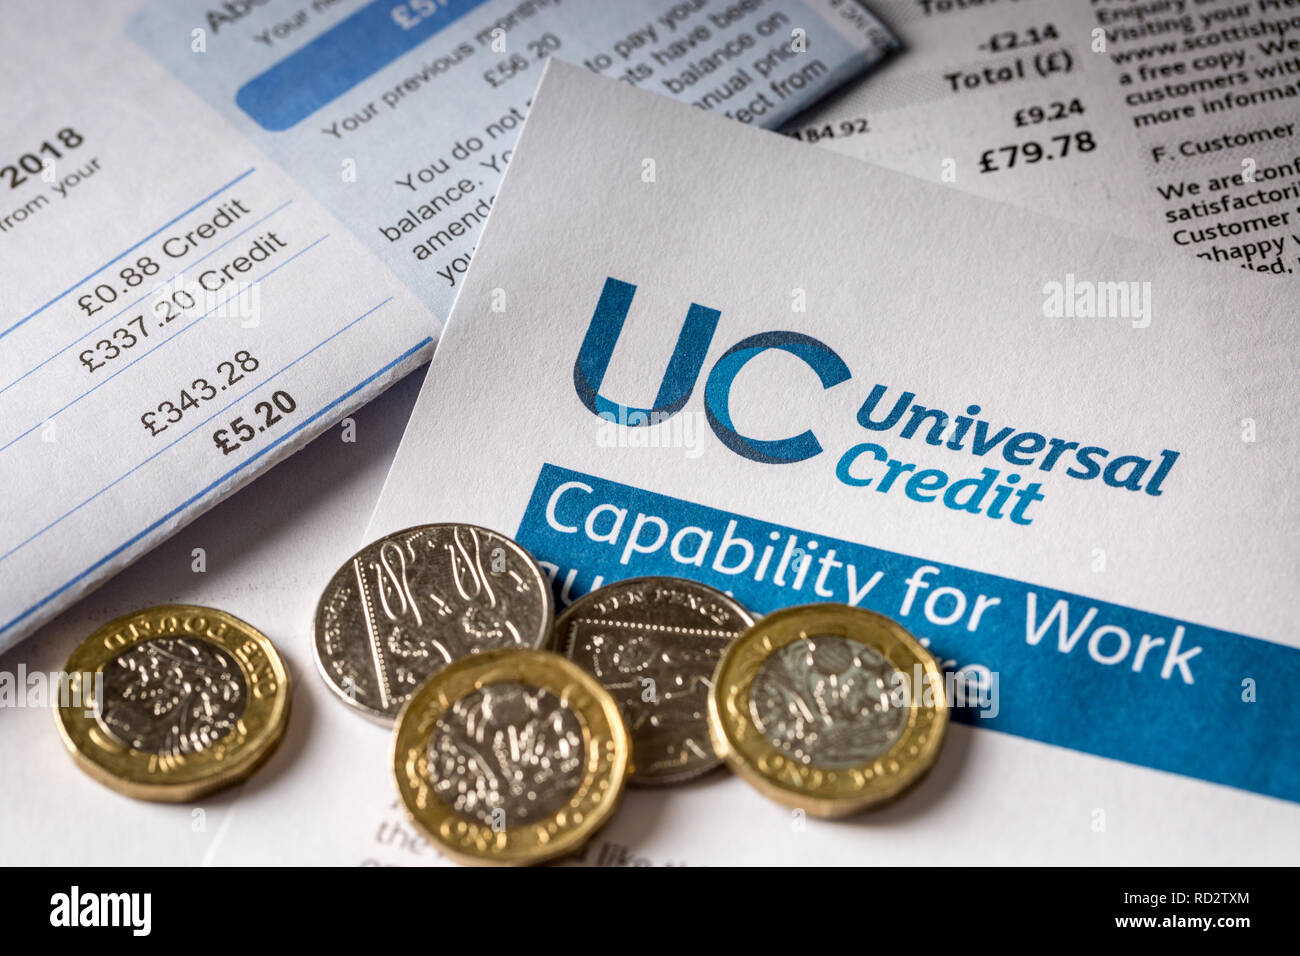 UK Universal Kredit Form mit einem Stapel unbezahlter Rechnungen Stockfoto